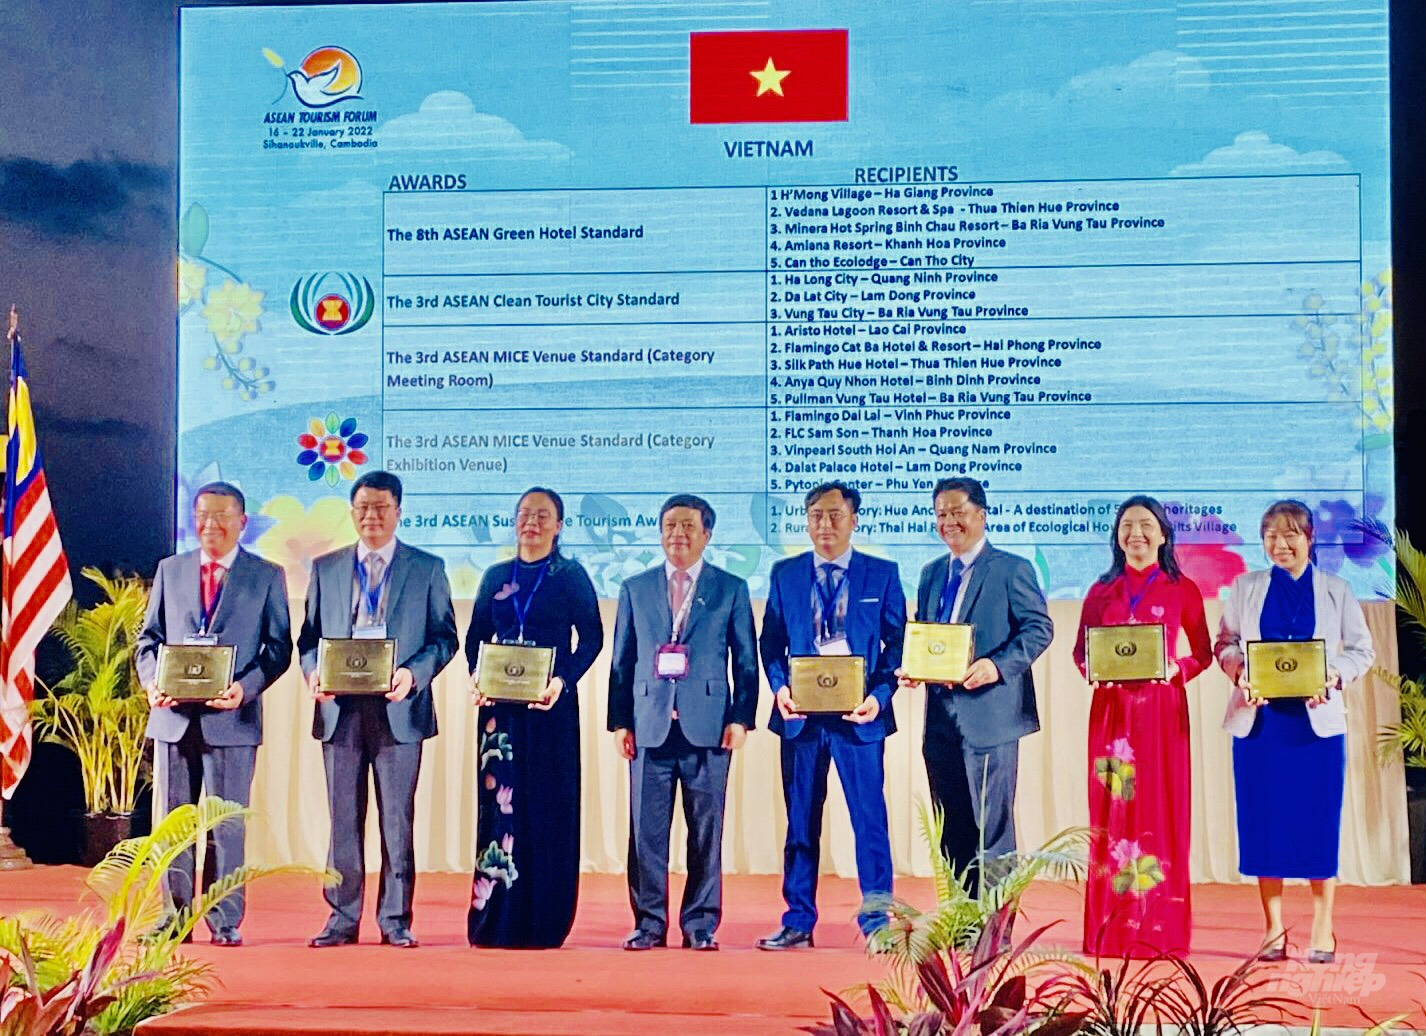 Giải thưởng Du lịch ASEAN là danh hiệu uy tín, góp phần tôn vinh và phát triển thương hiệu của địa phương, sản phẩm và dịch vụ chất lượng cao trong khu vực. Ảnh: MV.